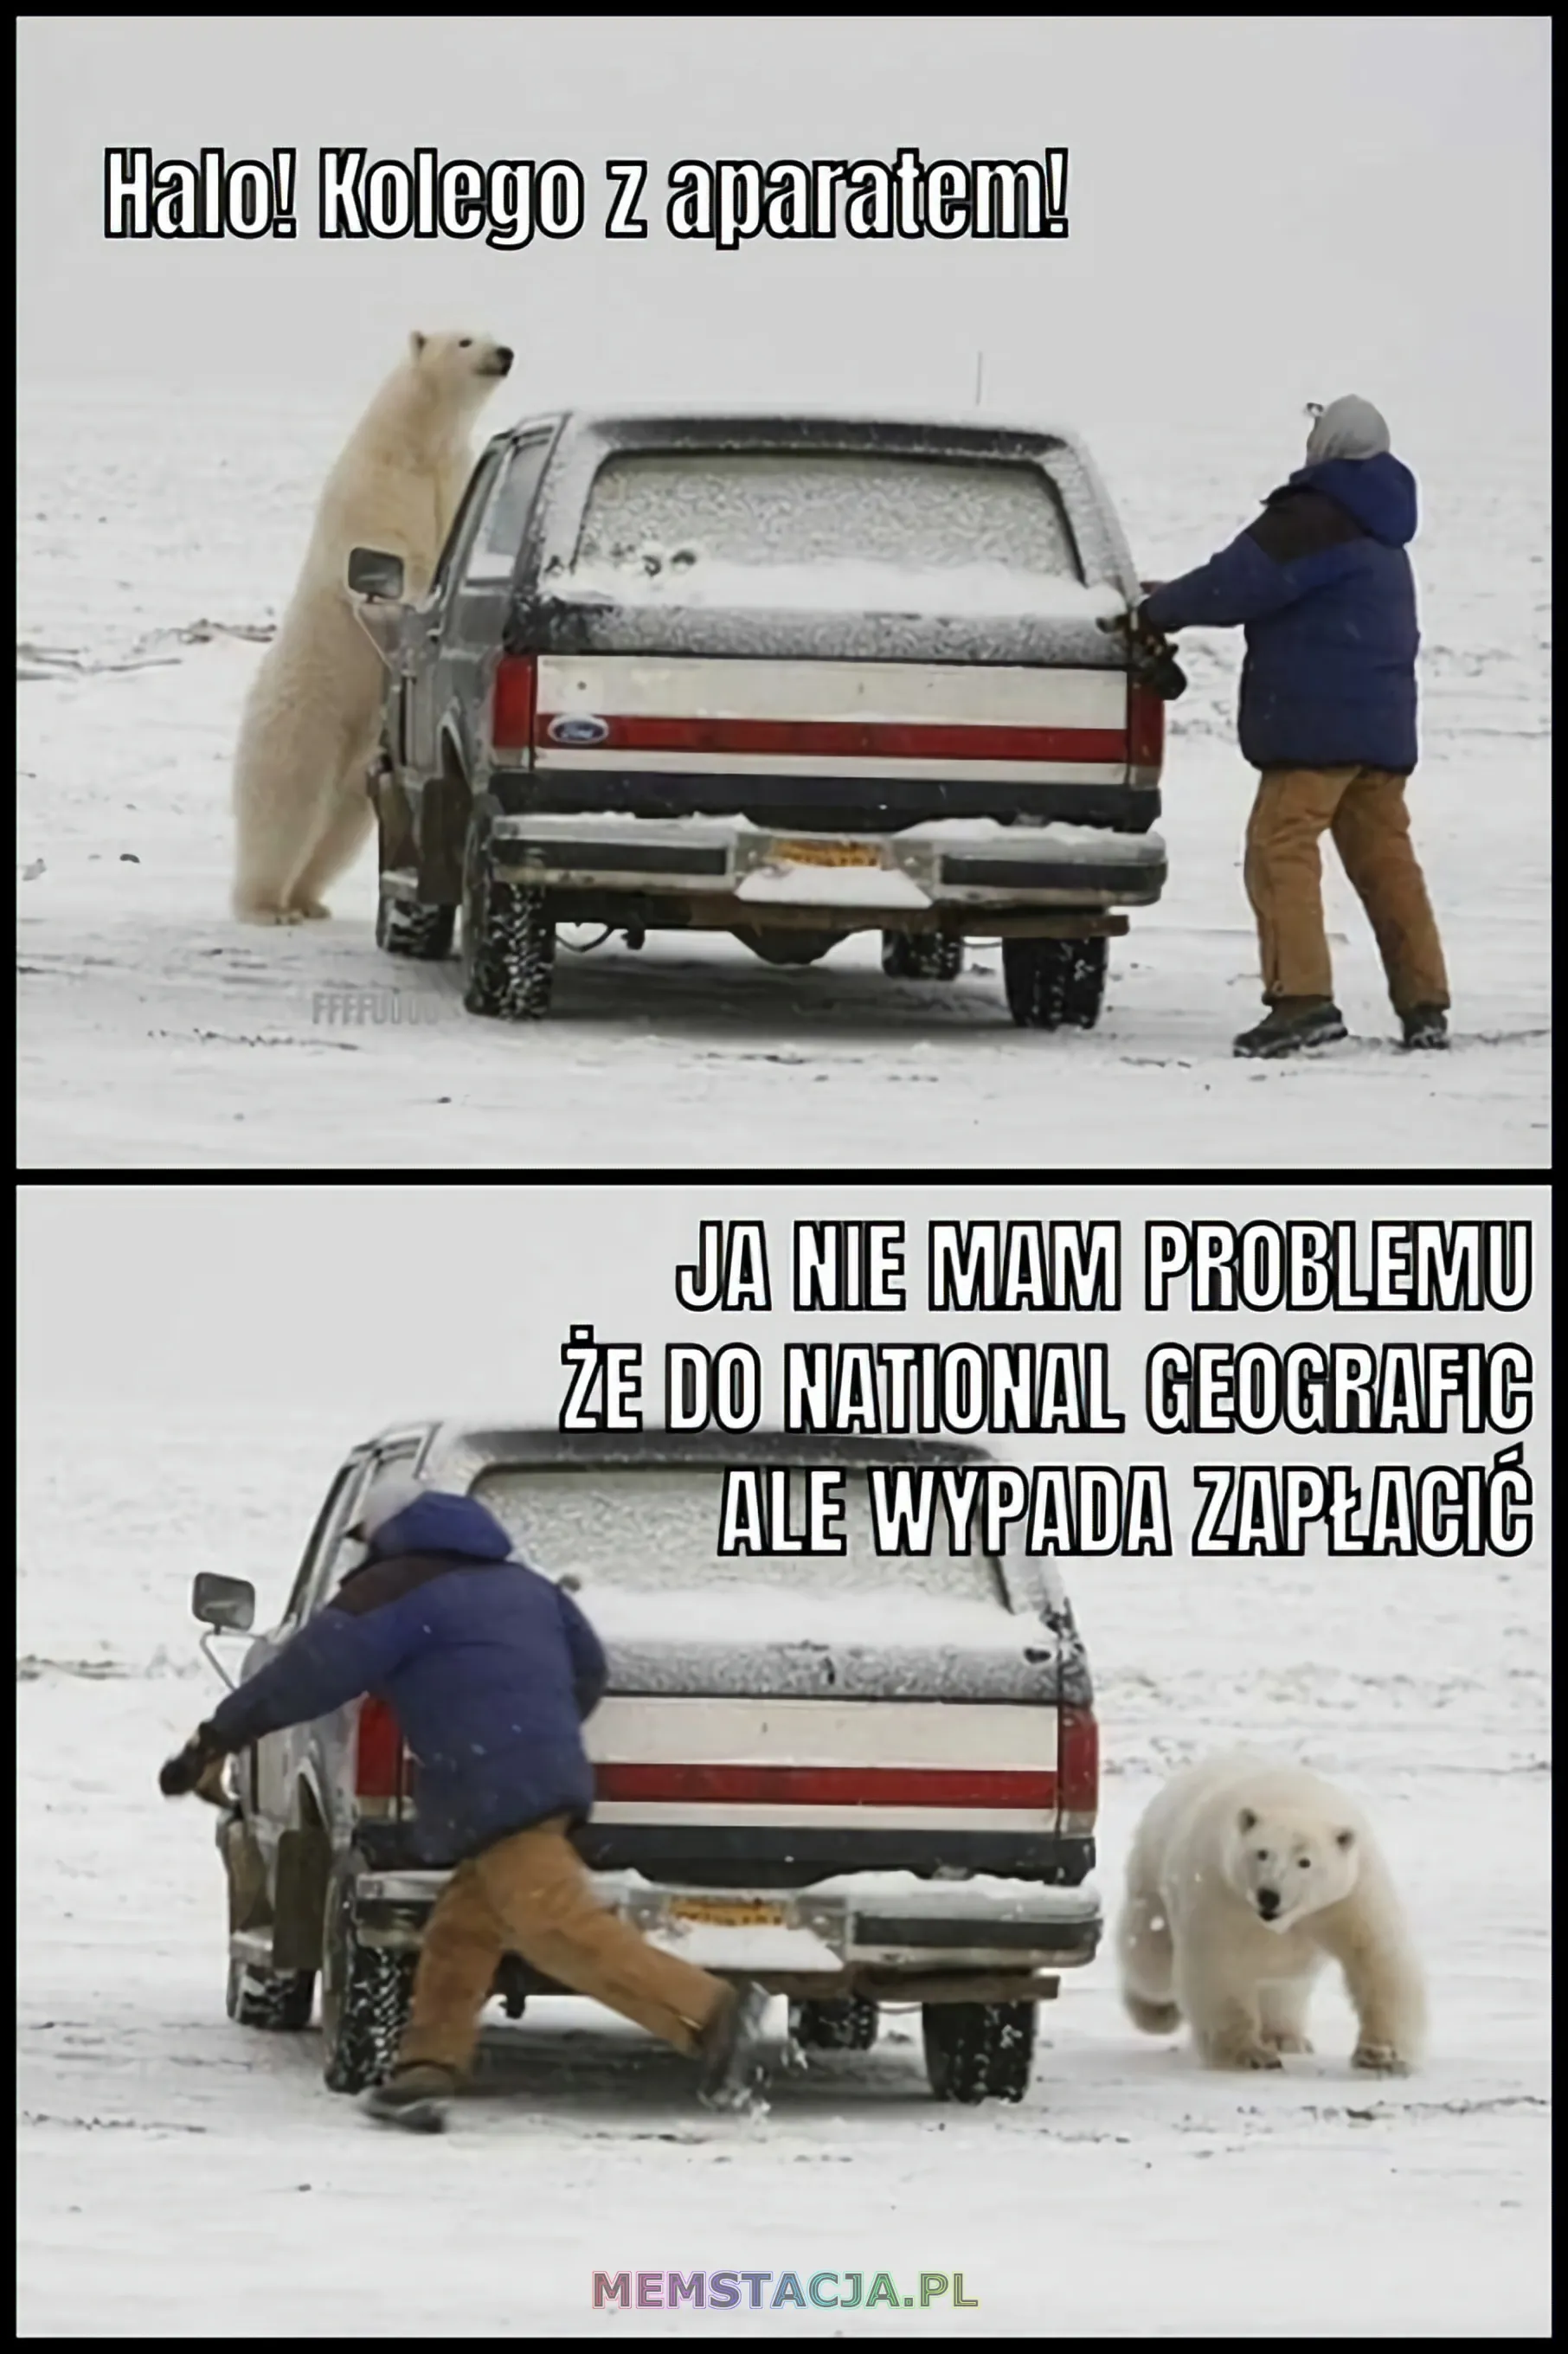 Mem przedstawiający człowieka, który ucieka przed misiem polarnym: 'Halo! Kolego z aparatem! Ja nie mam problemu, że do National Geografic, ale wypada zapłacić'